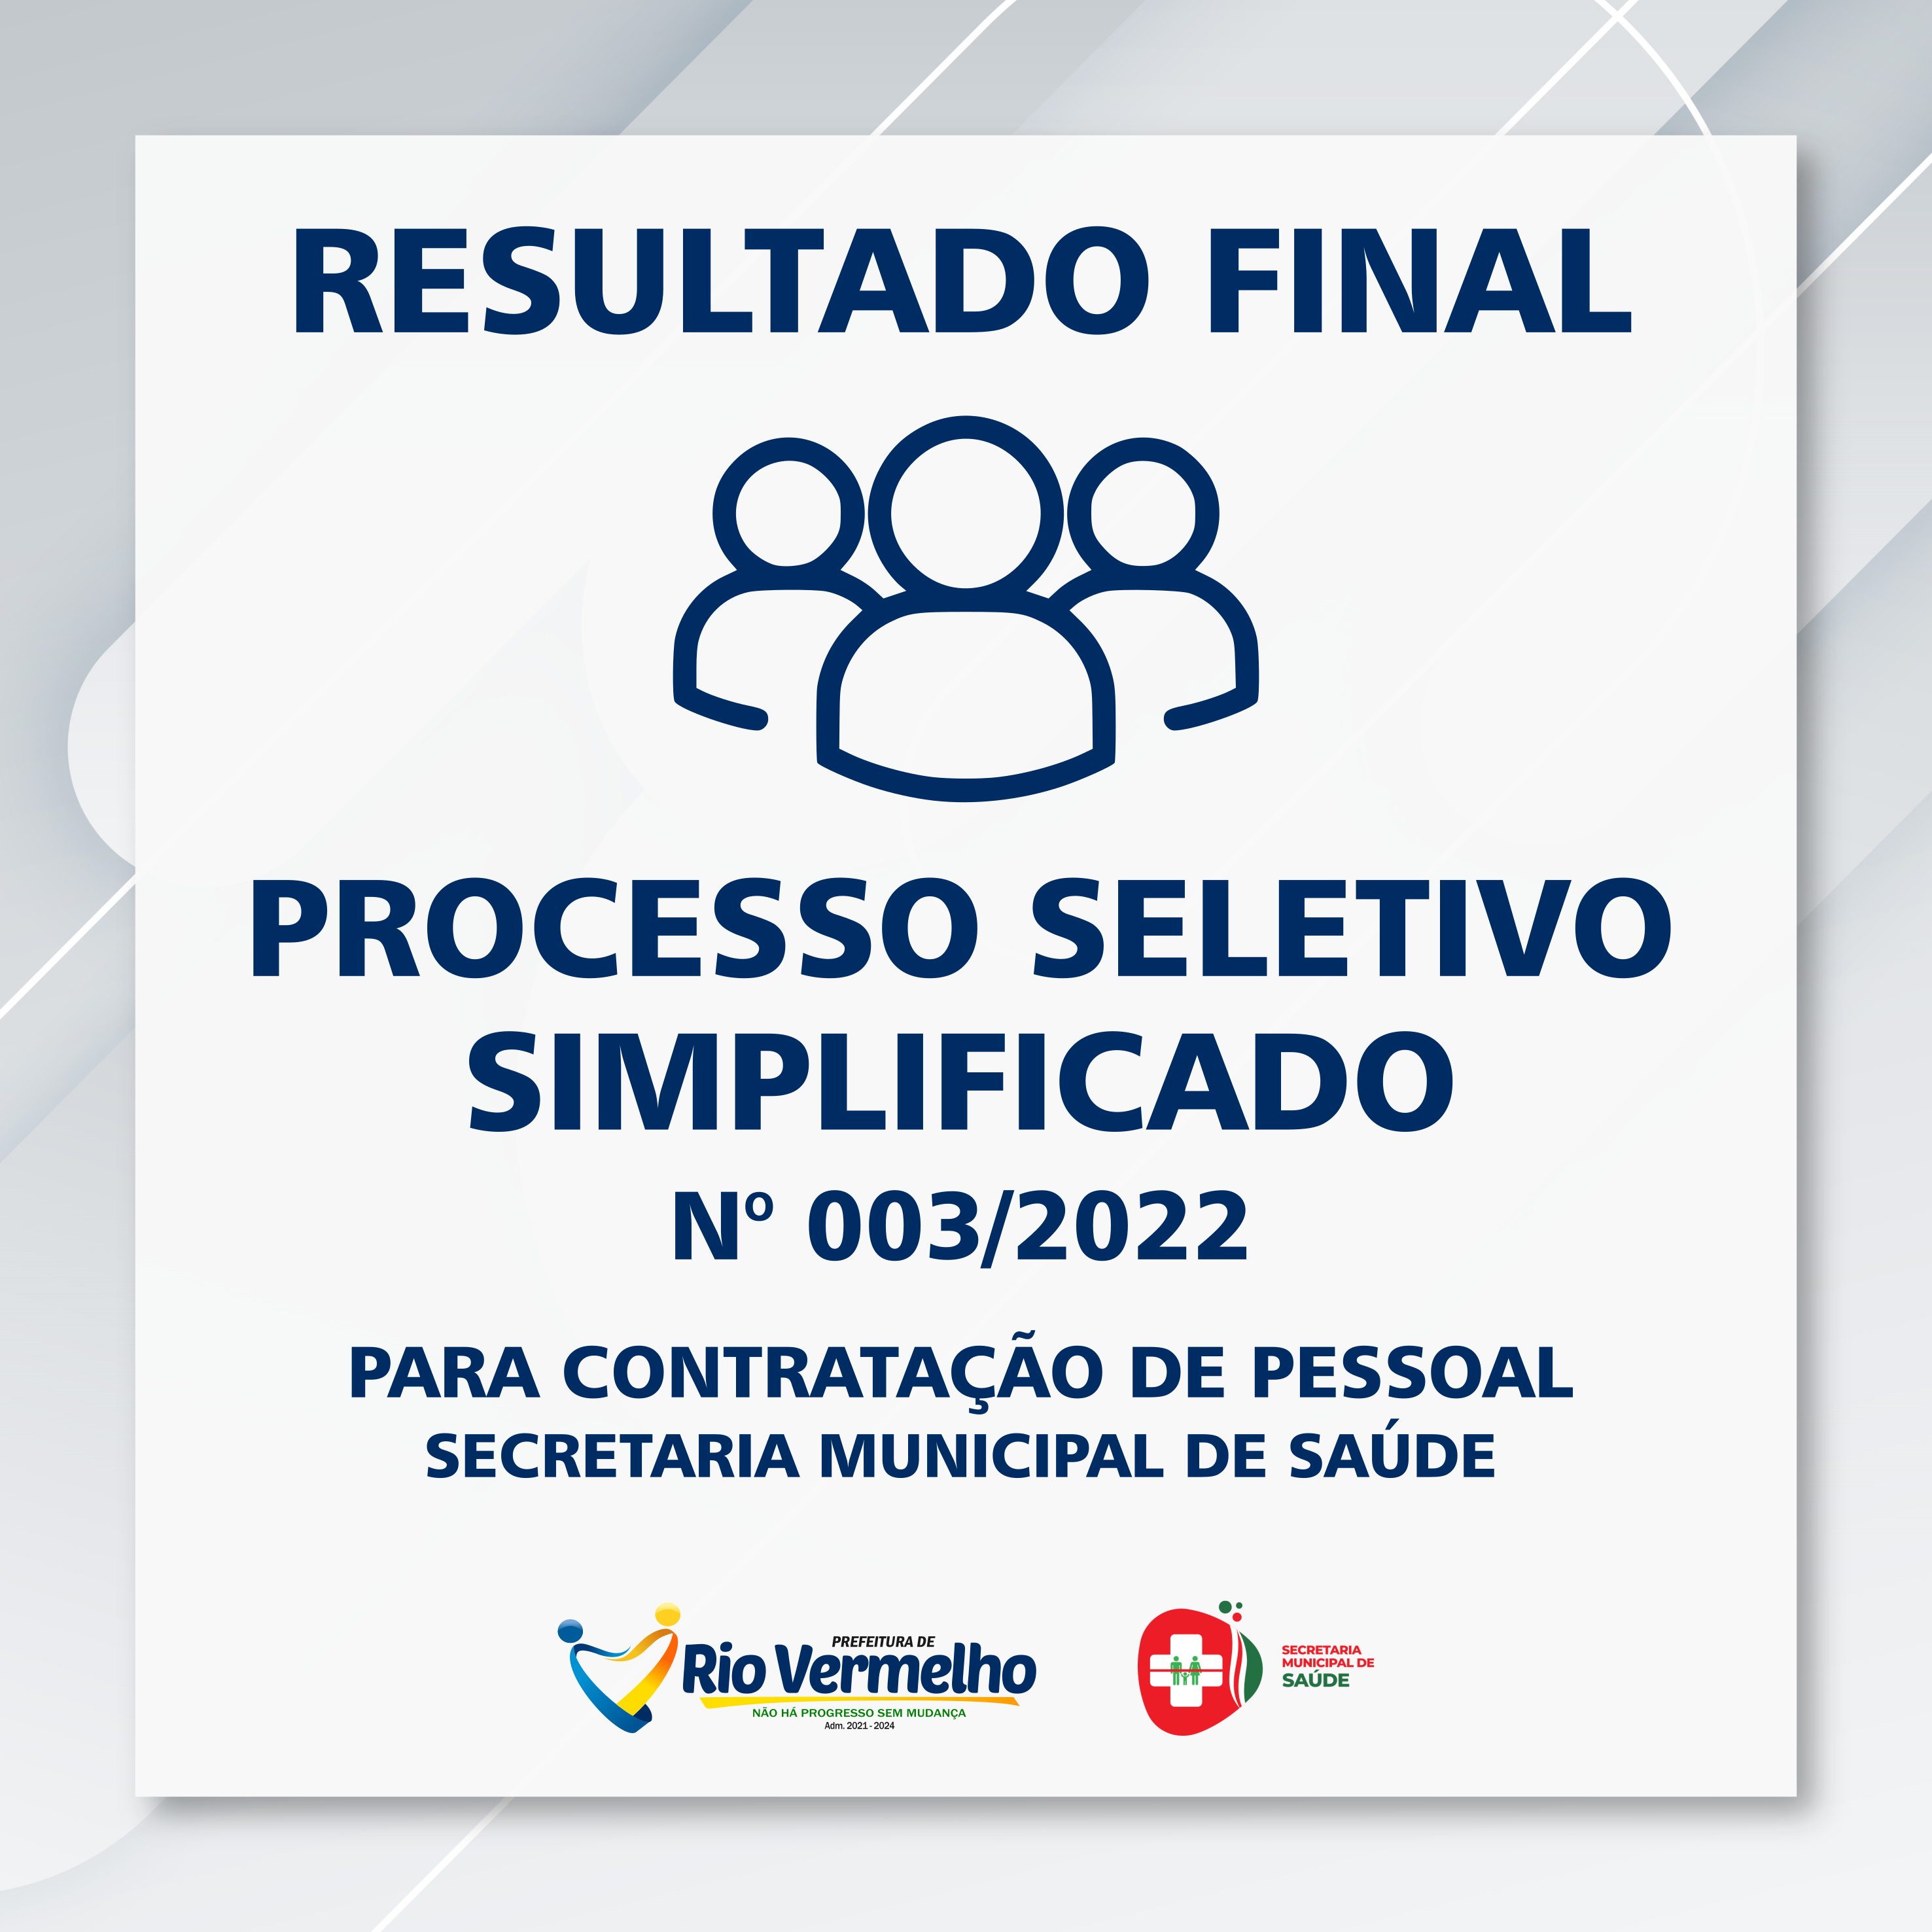 You are currently viewing RESULTADO FINAL DO PROCESSO SELETIVO SIMPLIFICADO EDITAL Nº 003/2022 / SECRETARIA DE SAÚDE